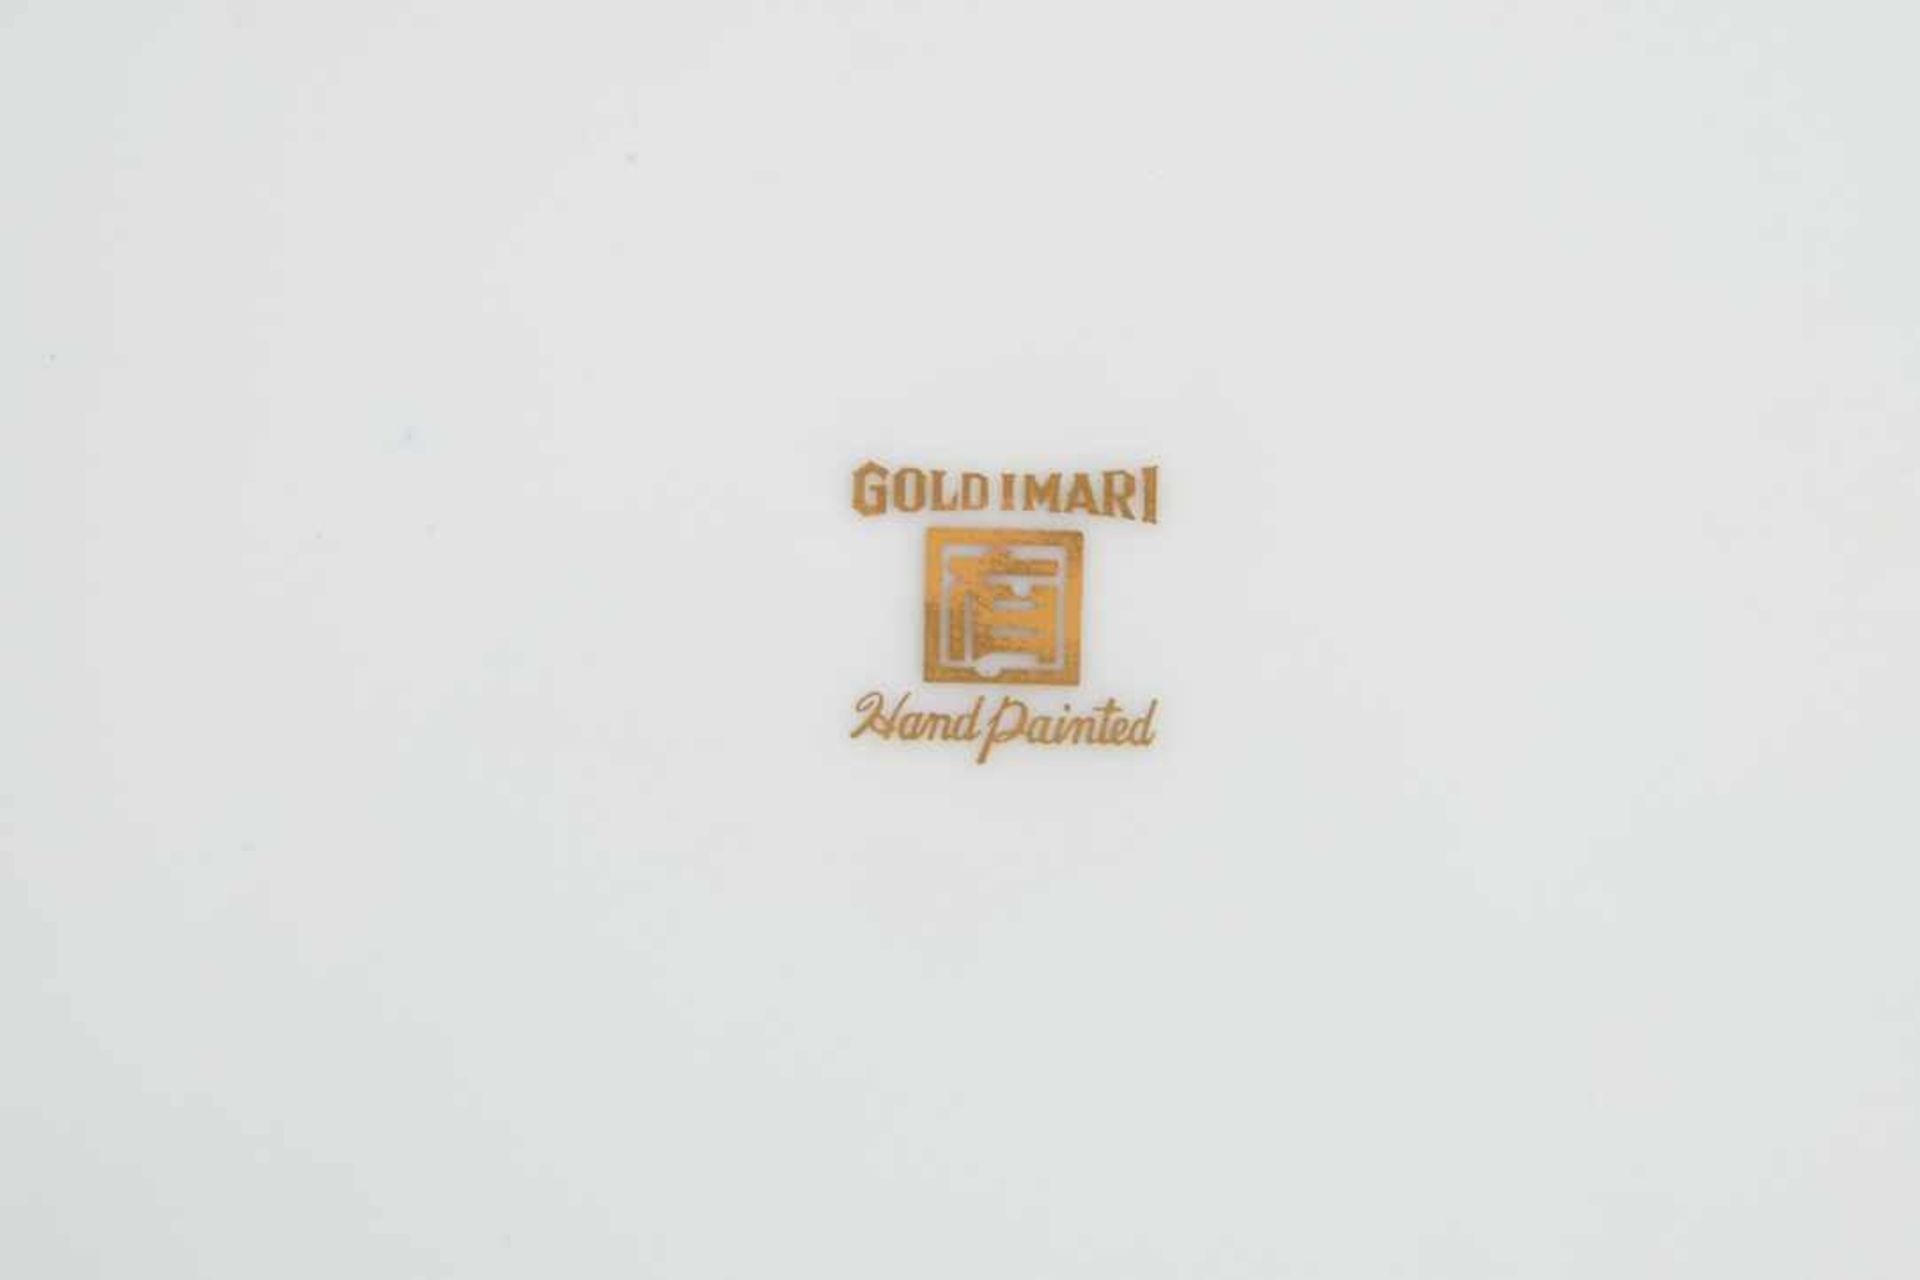 Gold-Imari. Zierteller. 20. Jahrhundert, gemarkt. Durchmesser 31,5 cm - Bild 4 aus 7